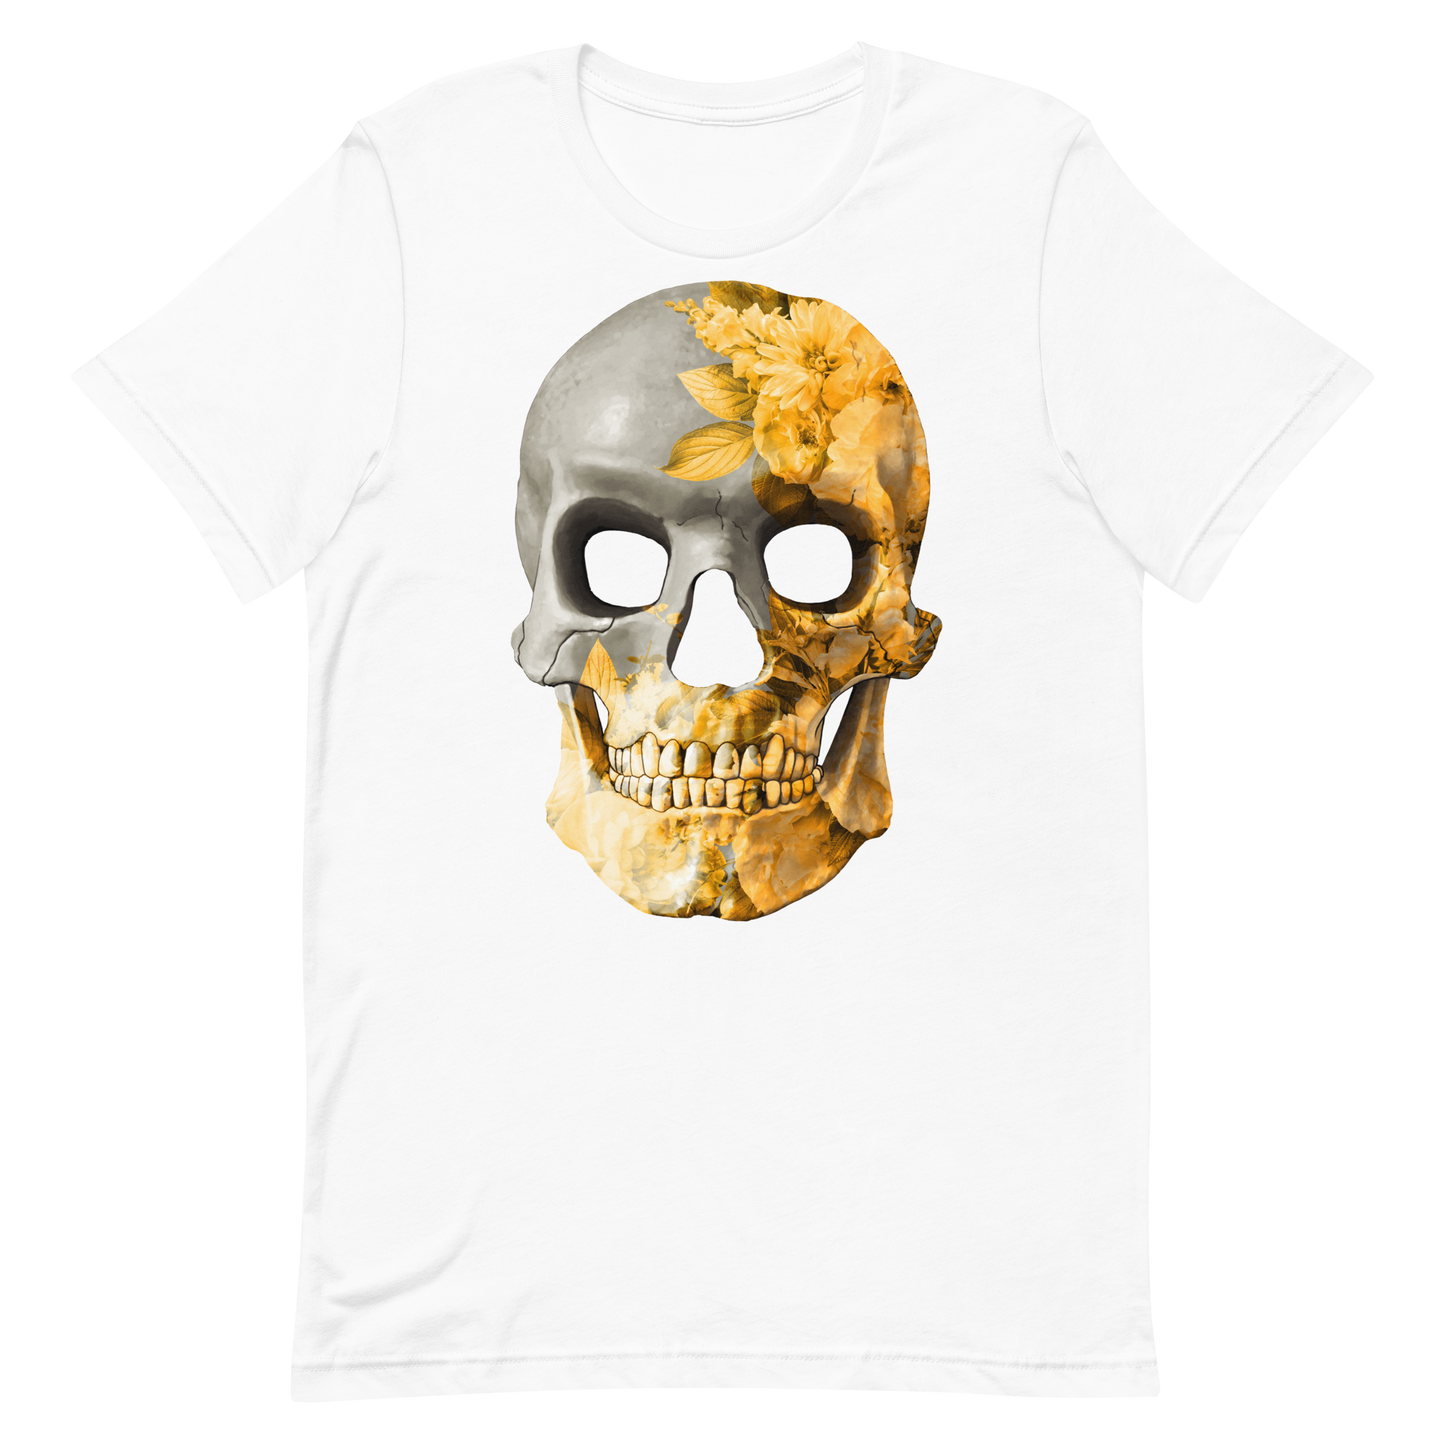 The Flower Skull motorcycle t-shirt 035